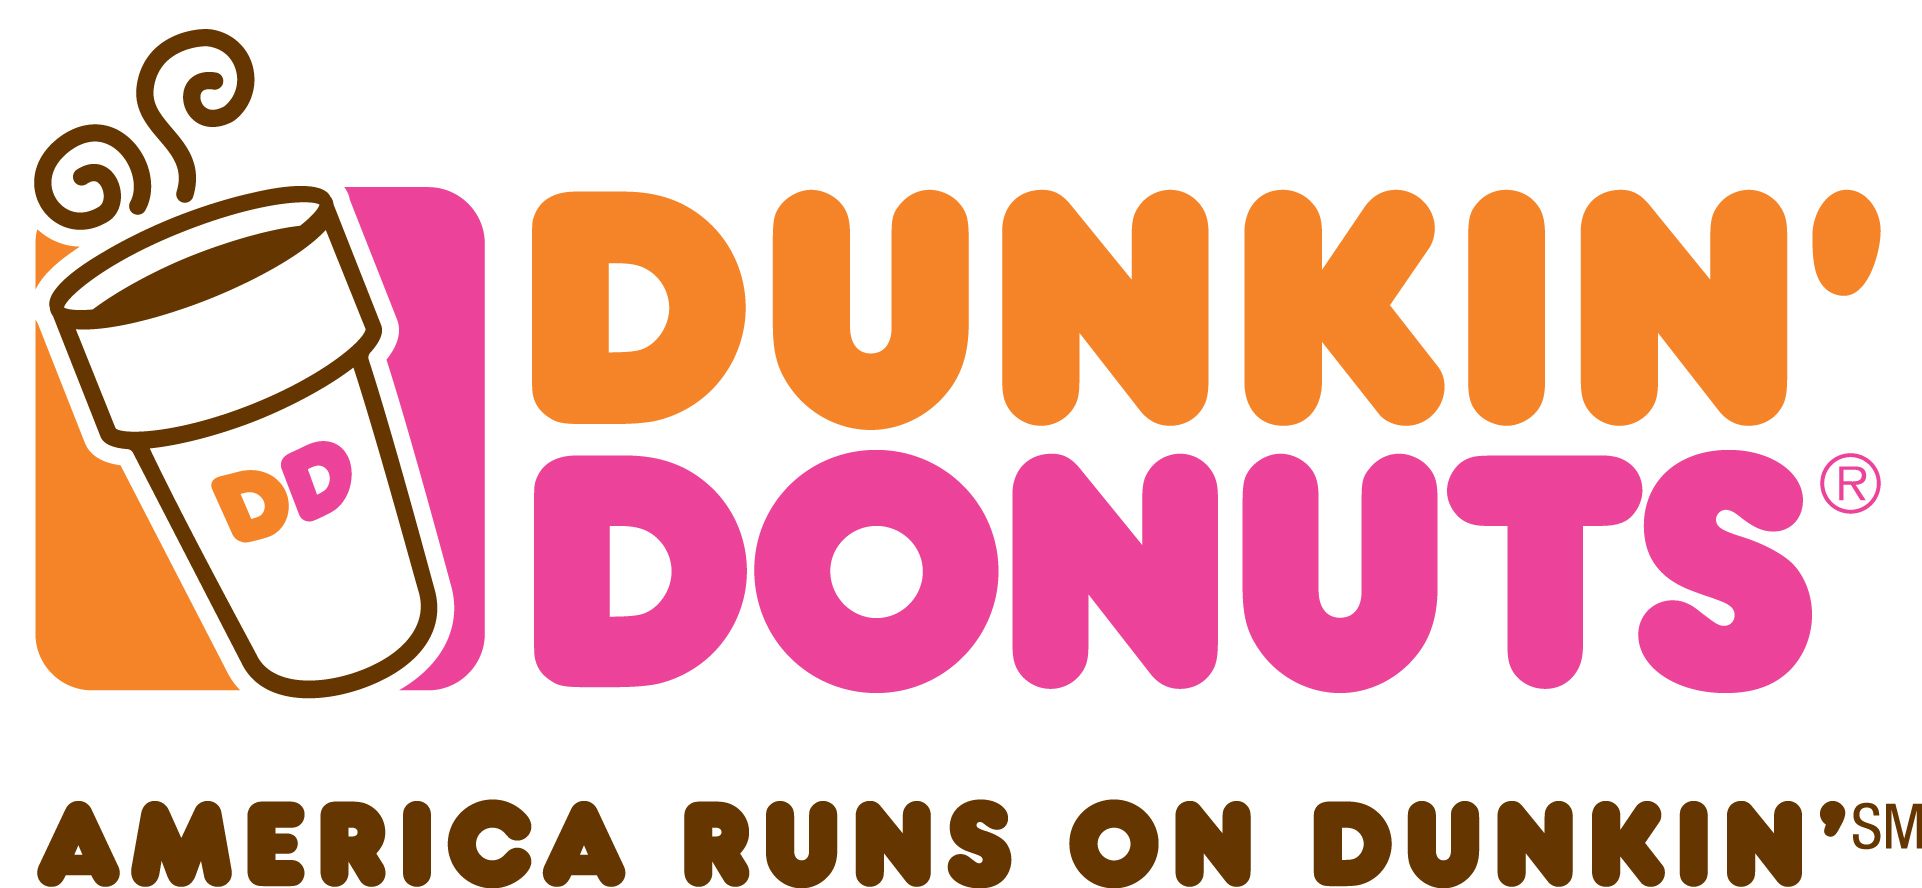 FLC_Walk_Dunkin_Donuts_logo